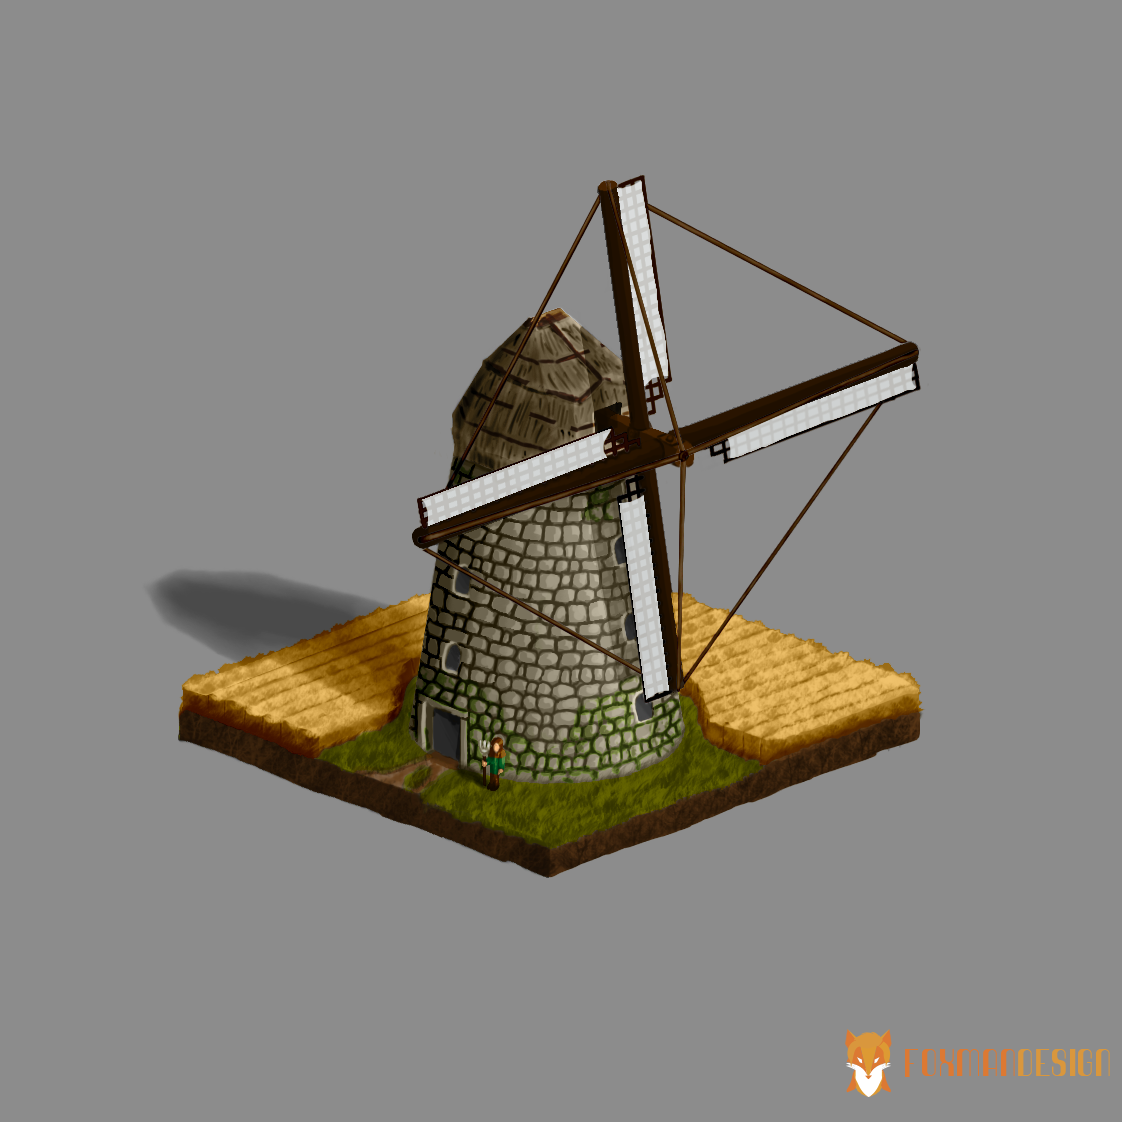 'Guardian' - Windmill